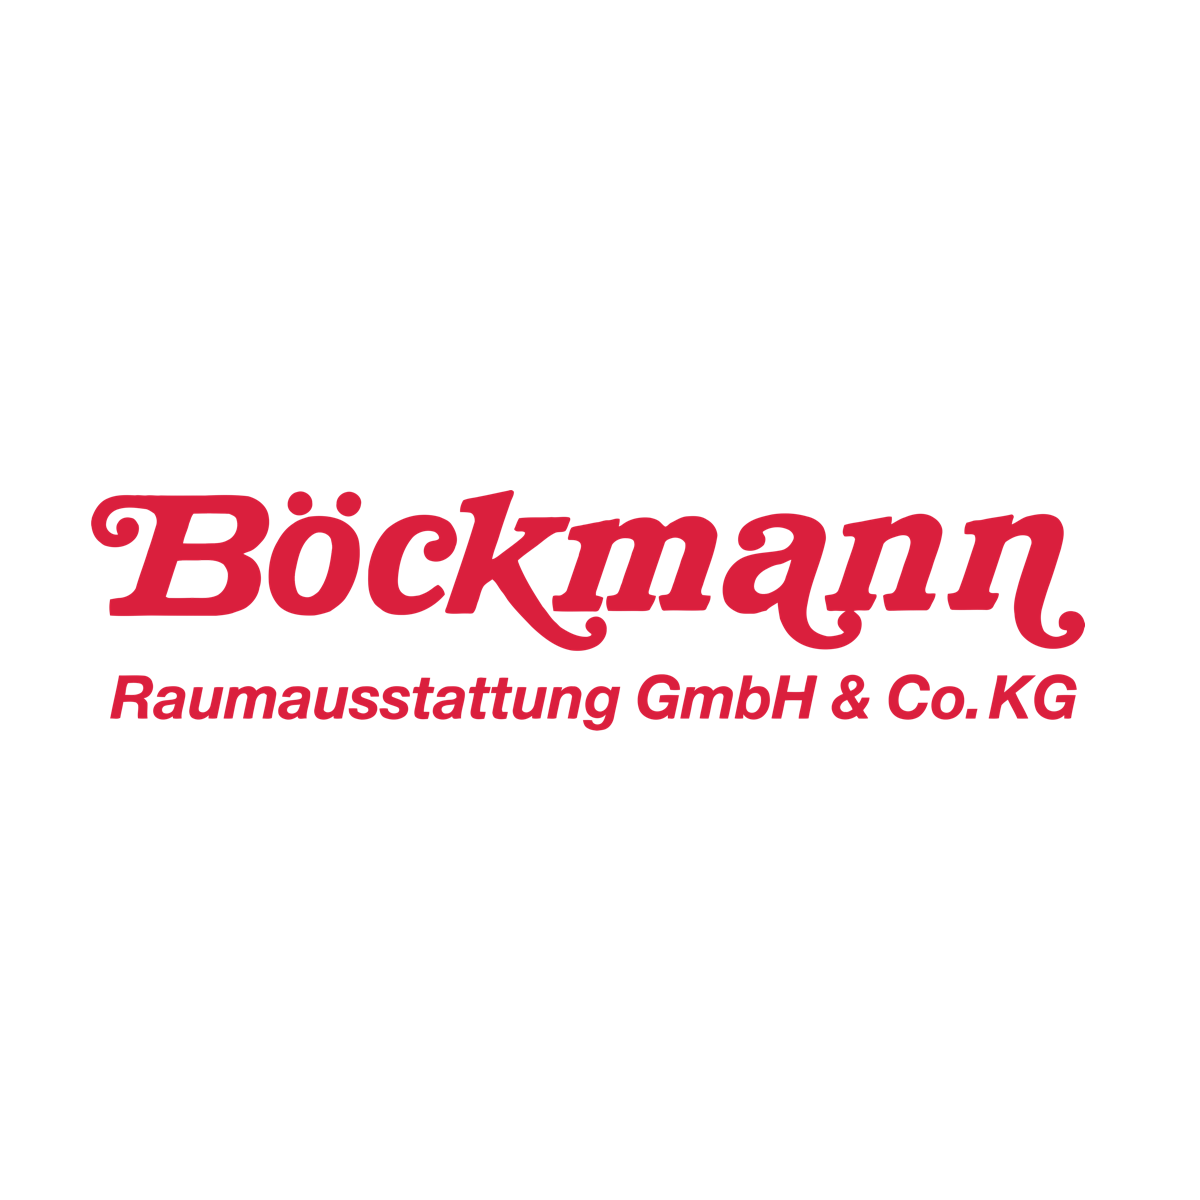 Böckmann Raumausstattung GmbH & Co. KG in Achim bei Bremen - Logo